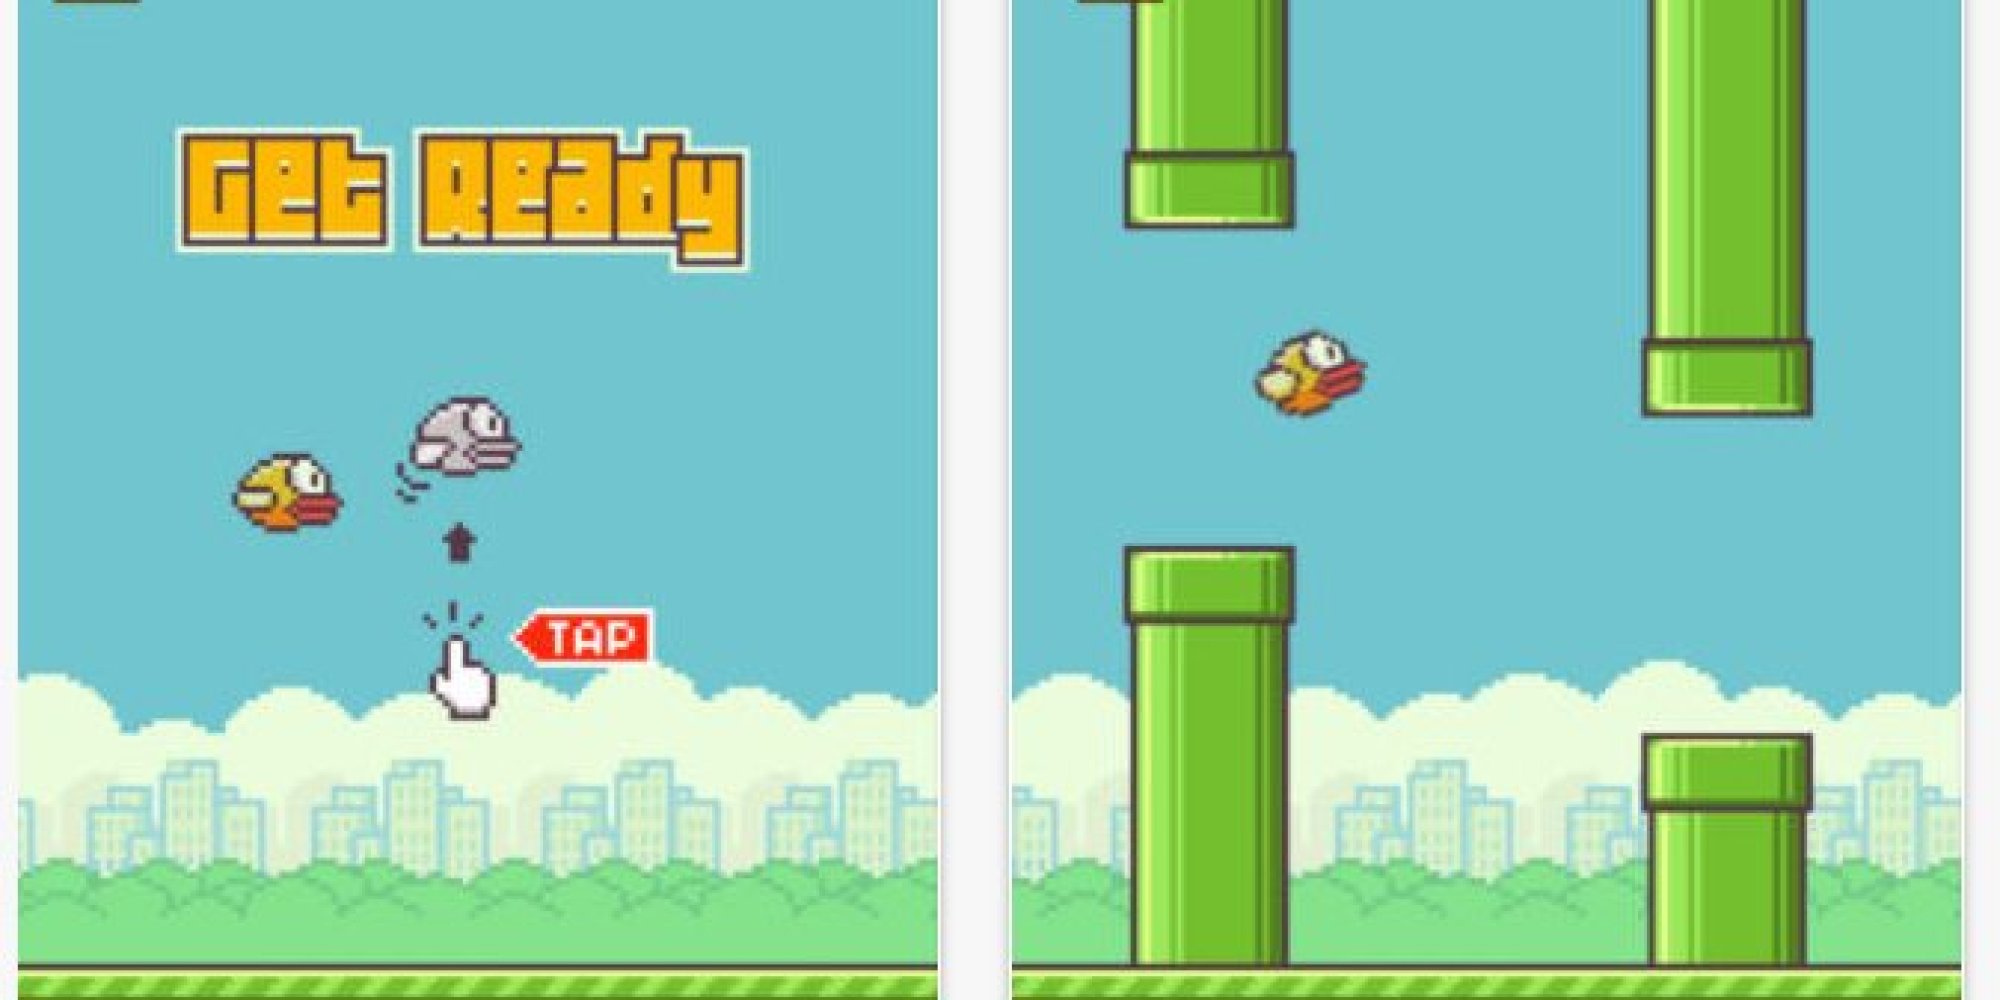 Screenshot de Flappy Bird: le titre requiert de faire l'action nécessaire au gameplay.